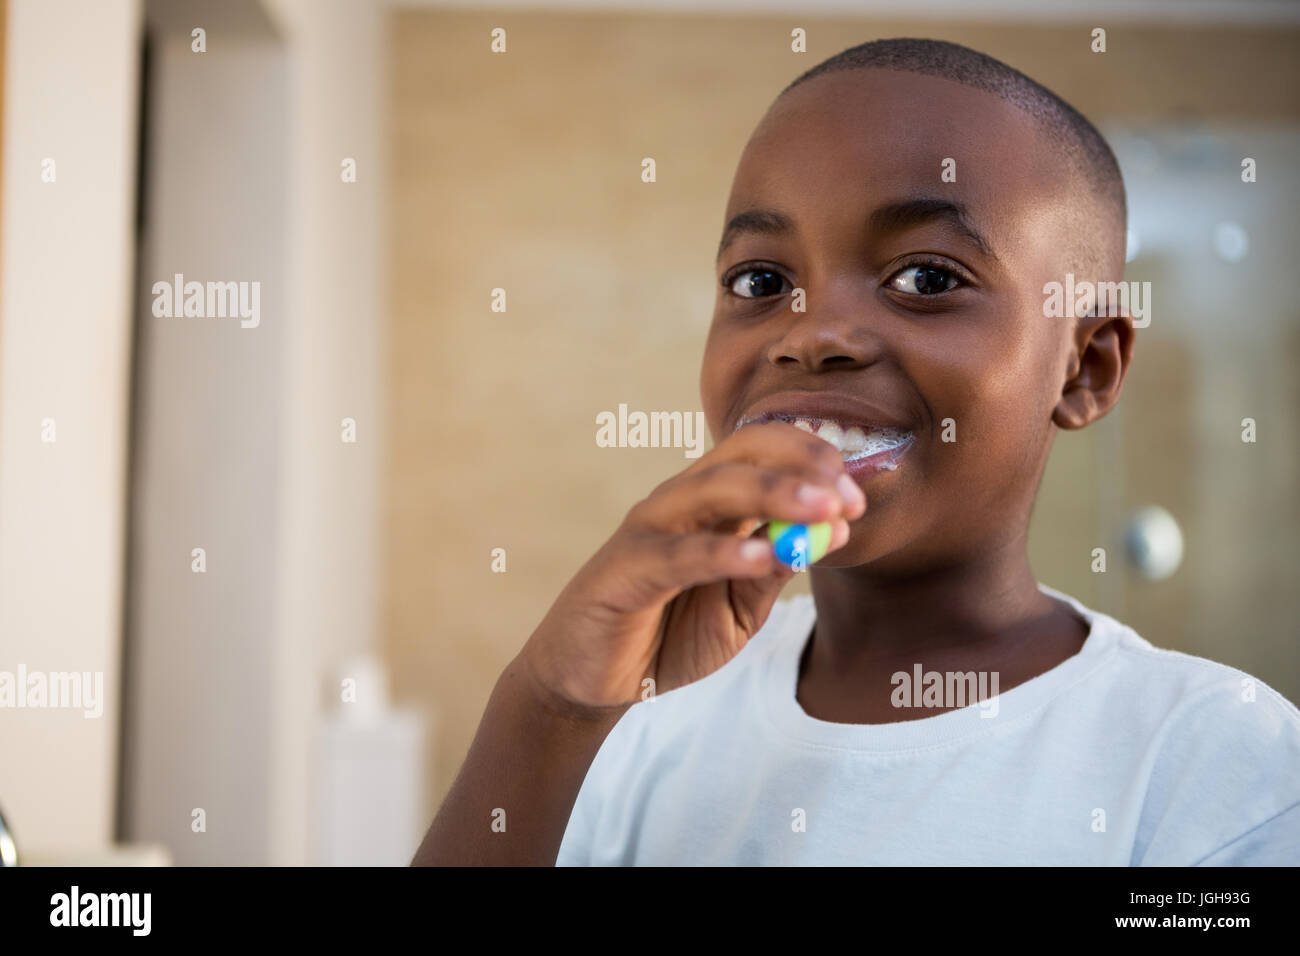 Close-up portrait of smiling boy avec brosse à salle de bains intérieure Banque D'Images